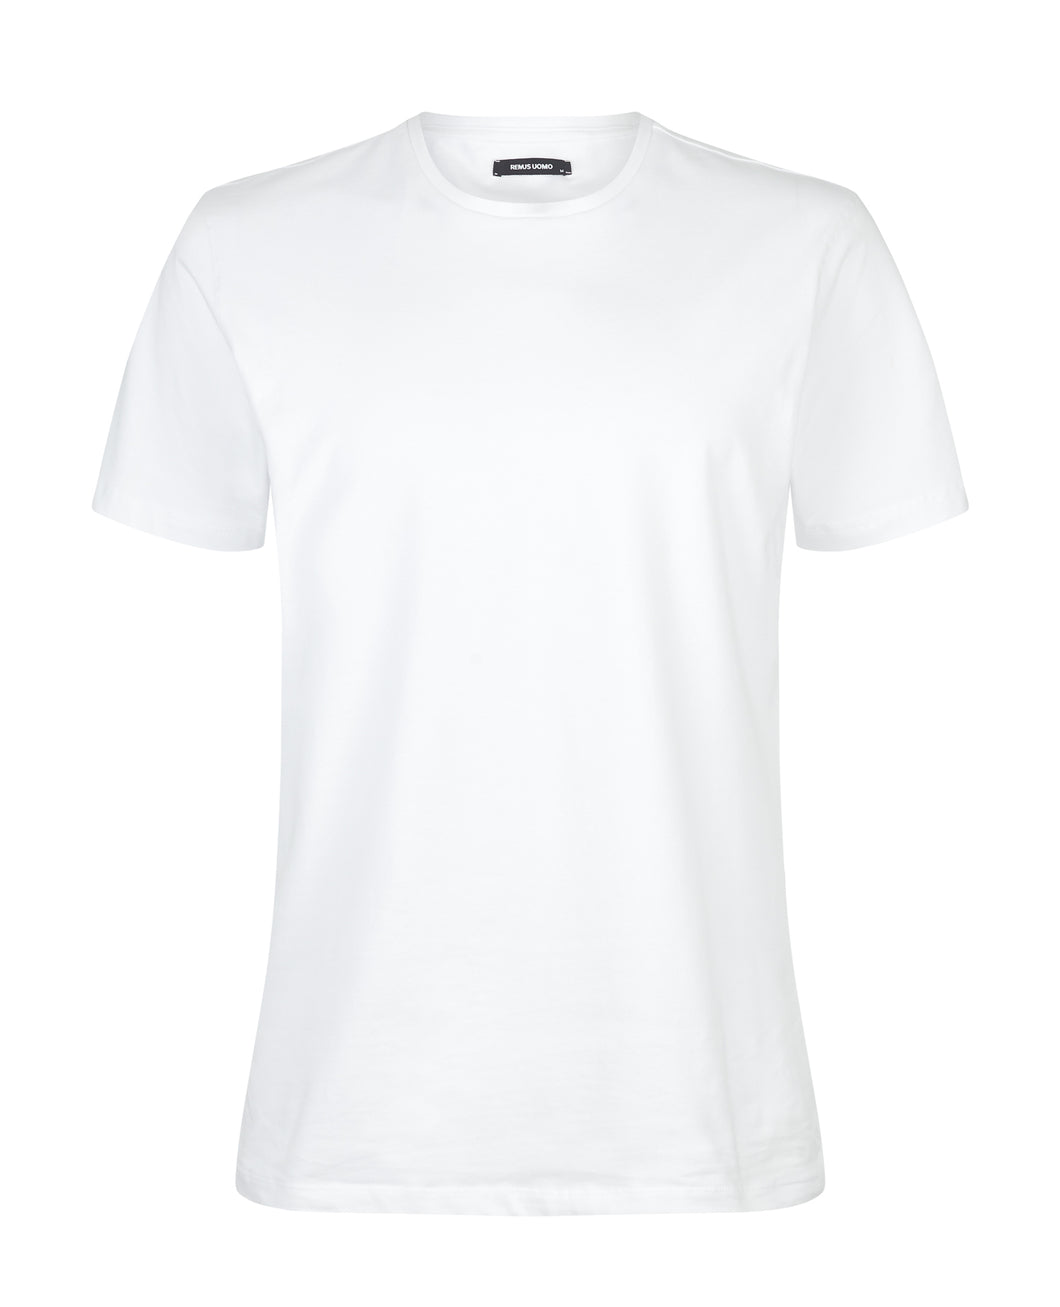 Remus Uomo Crew Neck T-Shirt White